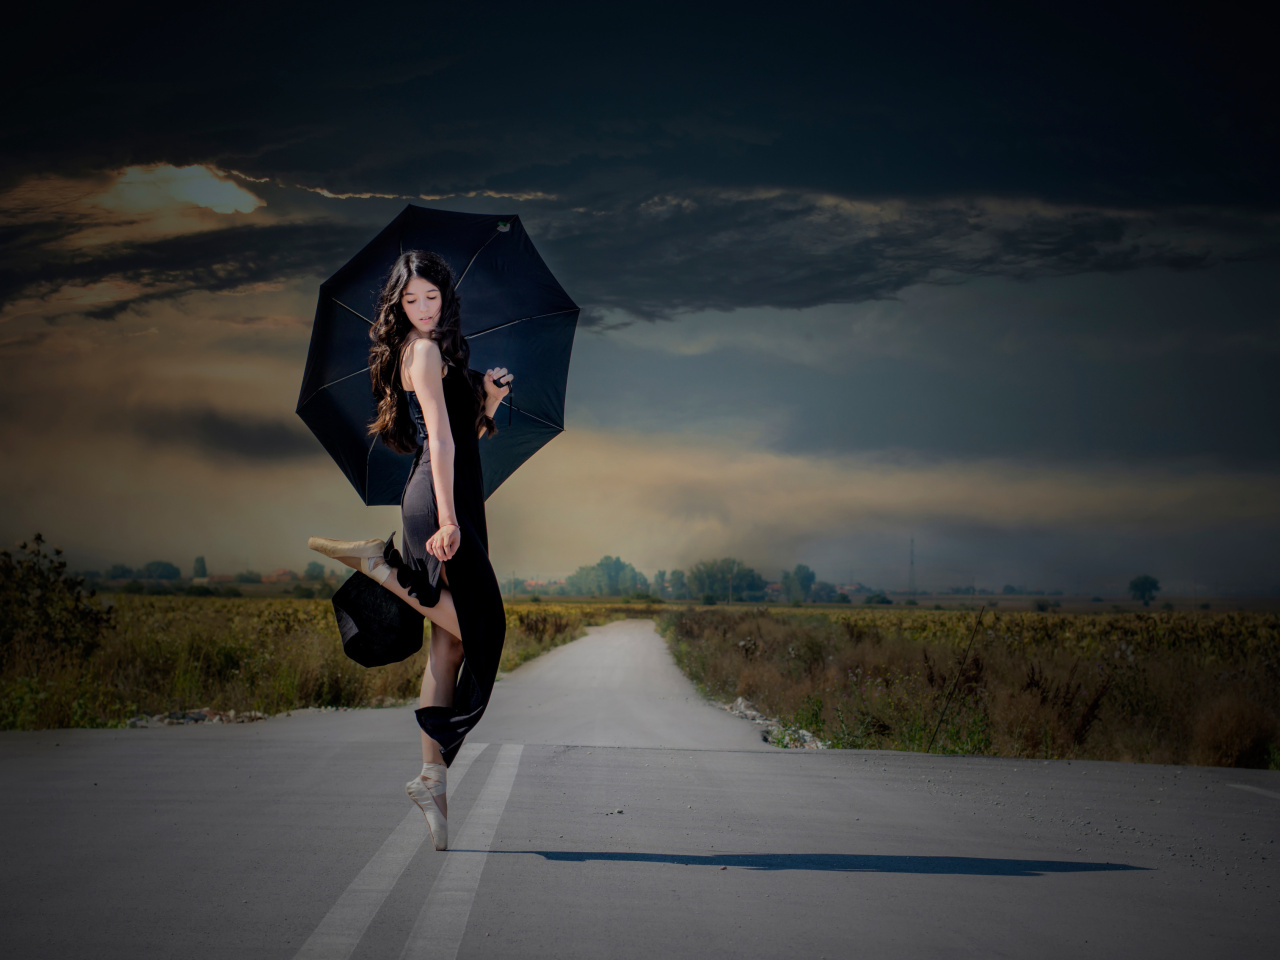 Das Ballerina with black umbrella Wallpaper 1280x960